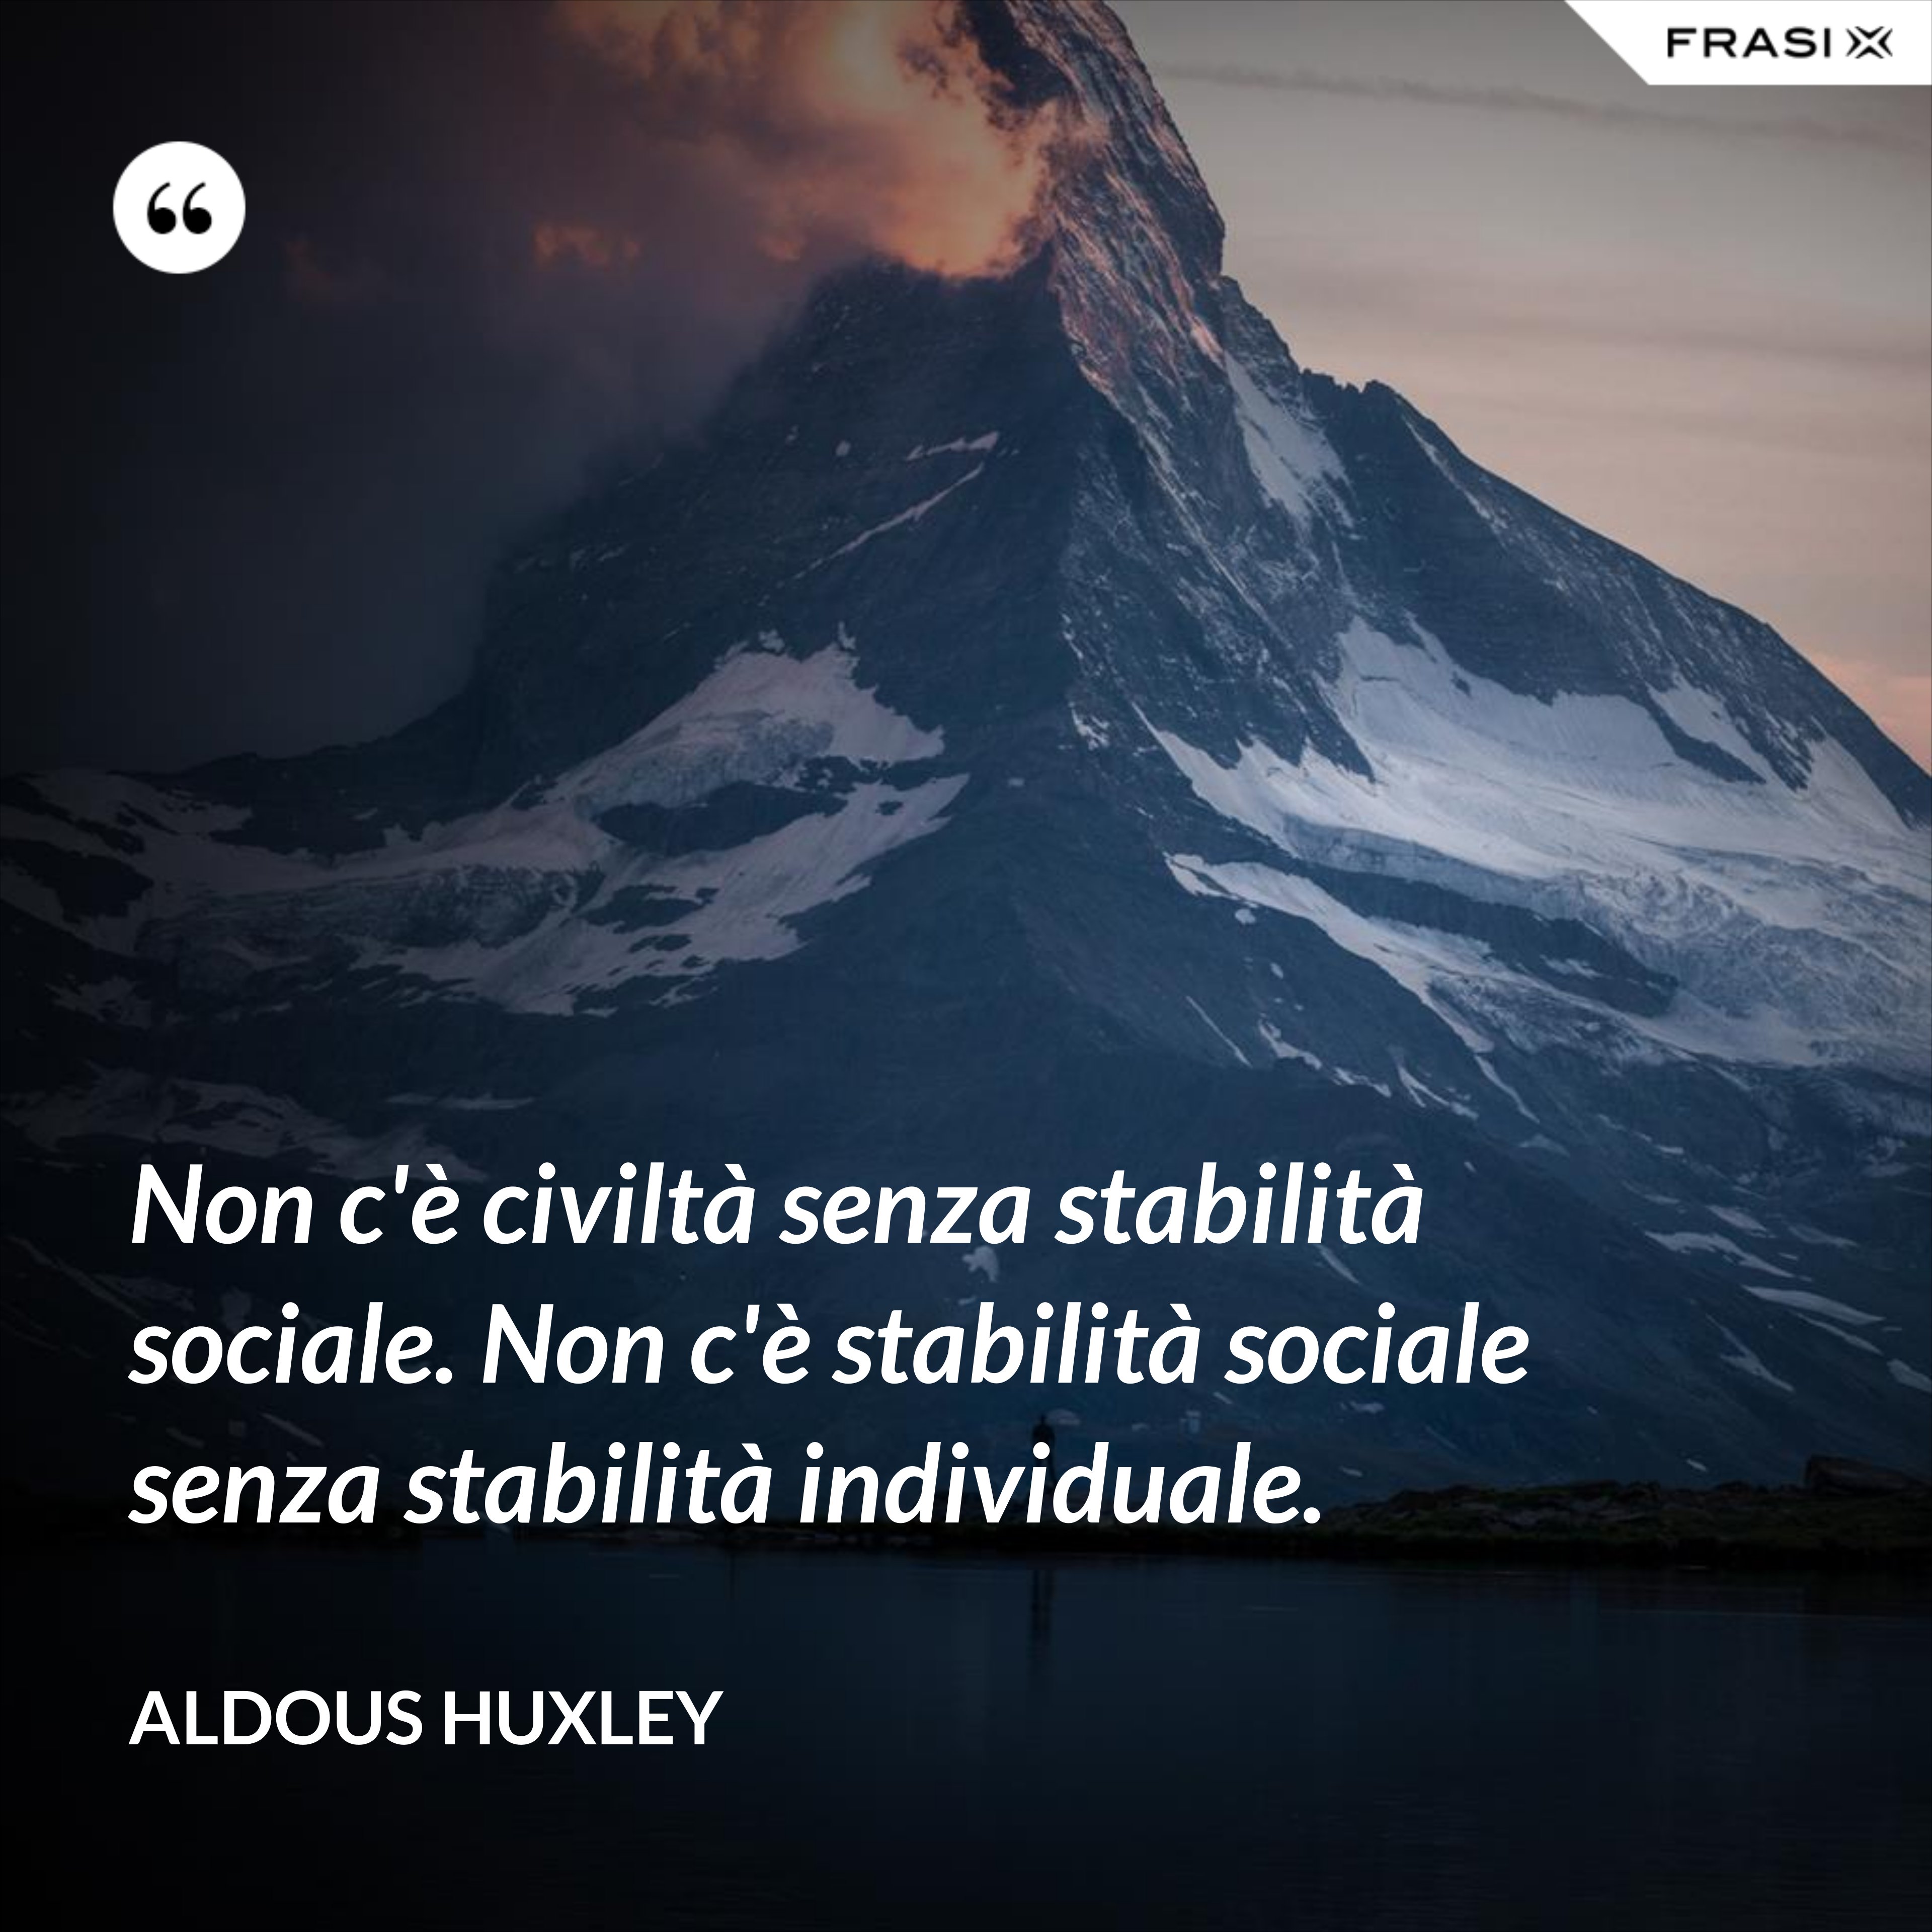 Non c'è civiltà senza stabilità sociale. Non c'è stabilità sociale senza stabilità individuale. - Aldous Huxley